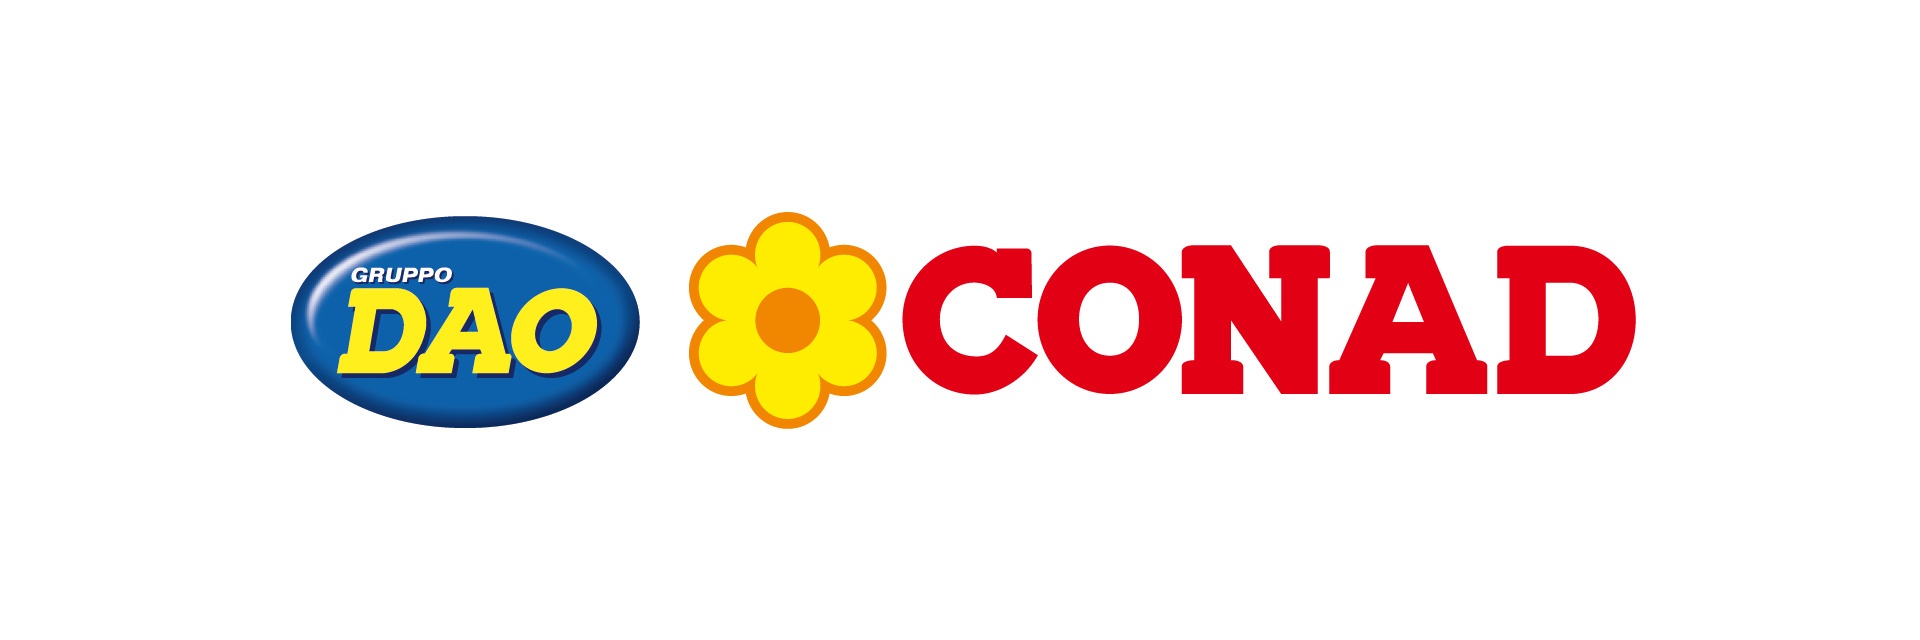 Logo Dao-Conad